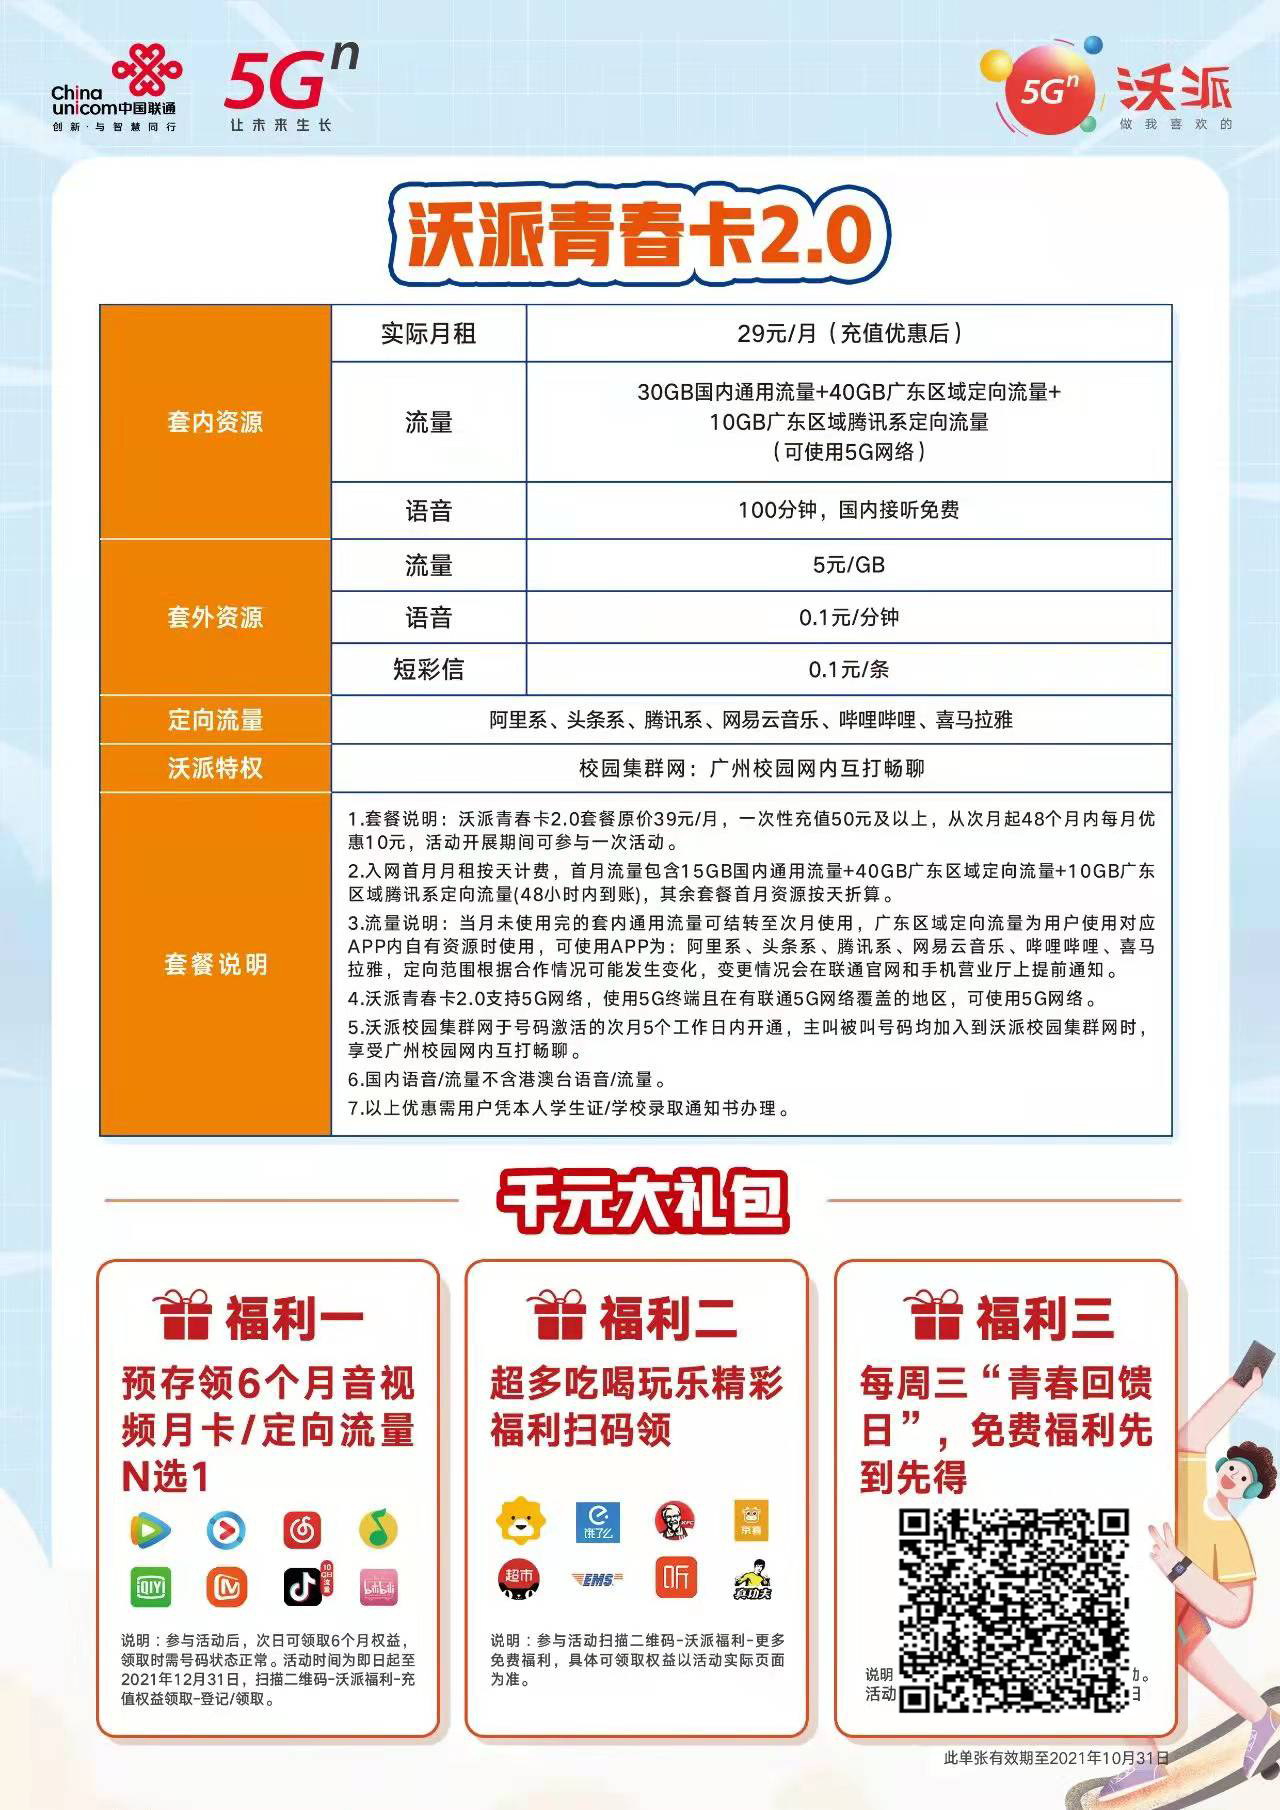 广州联通沃派青春卡-校园套餐办理入口-第1张图片